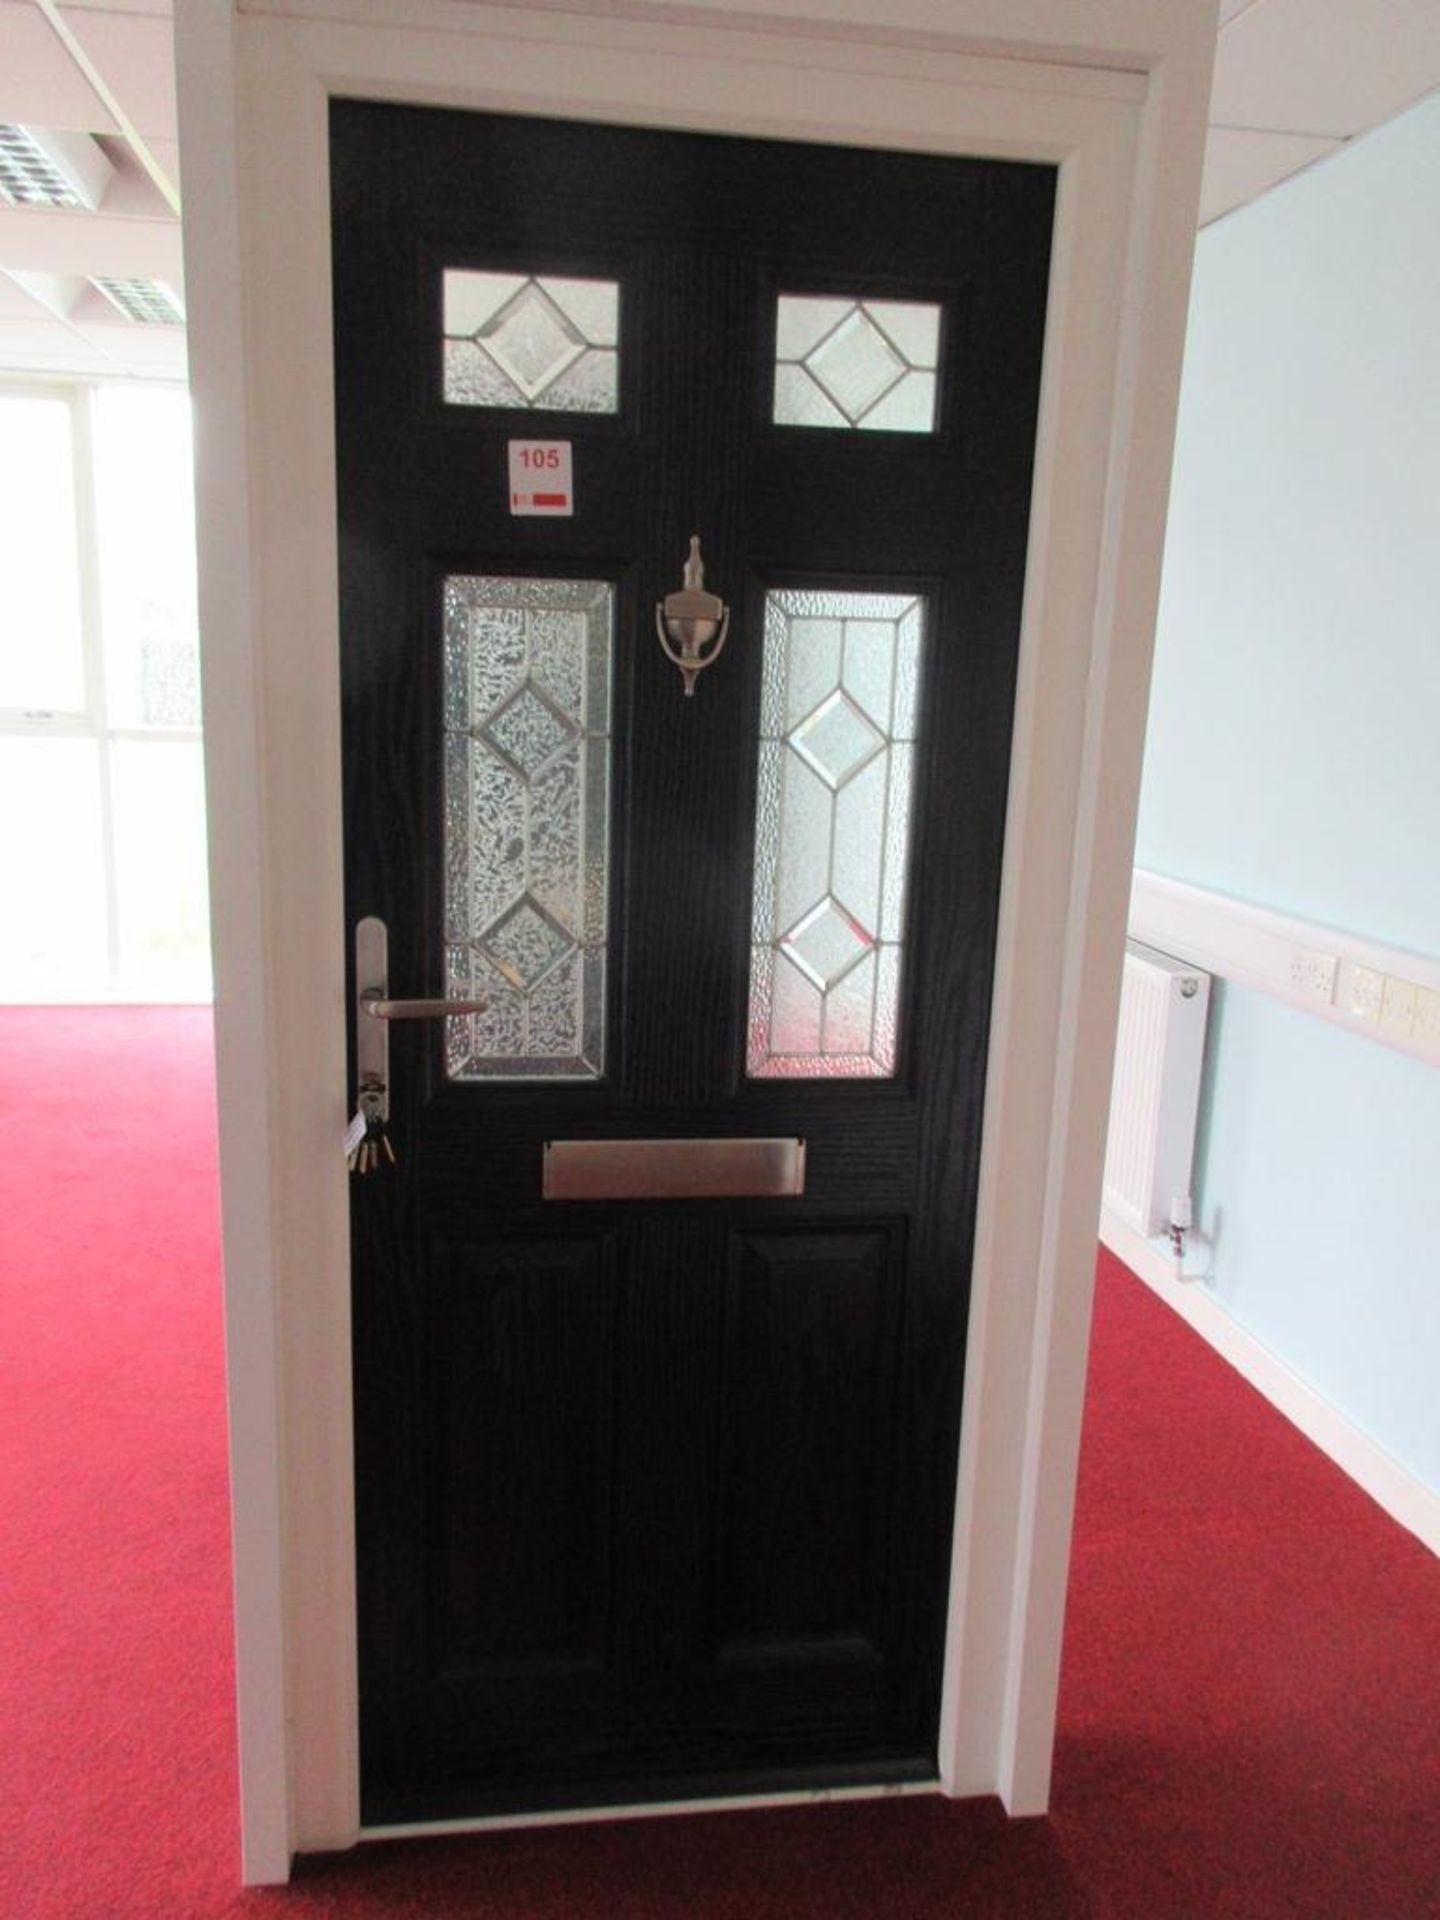 Composite showroom door